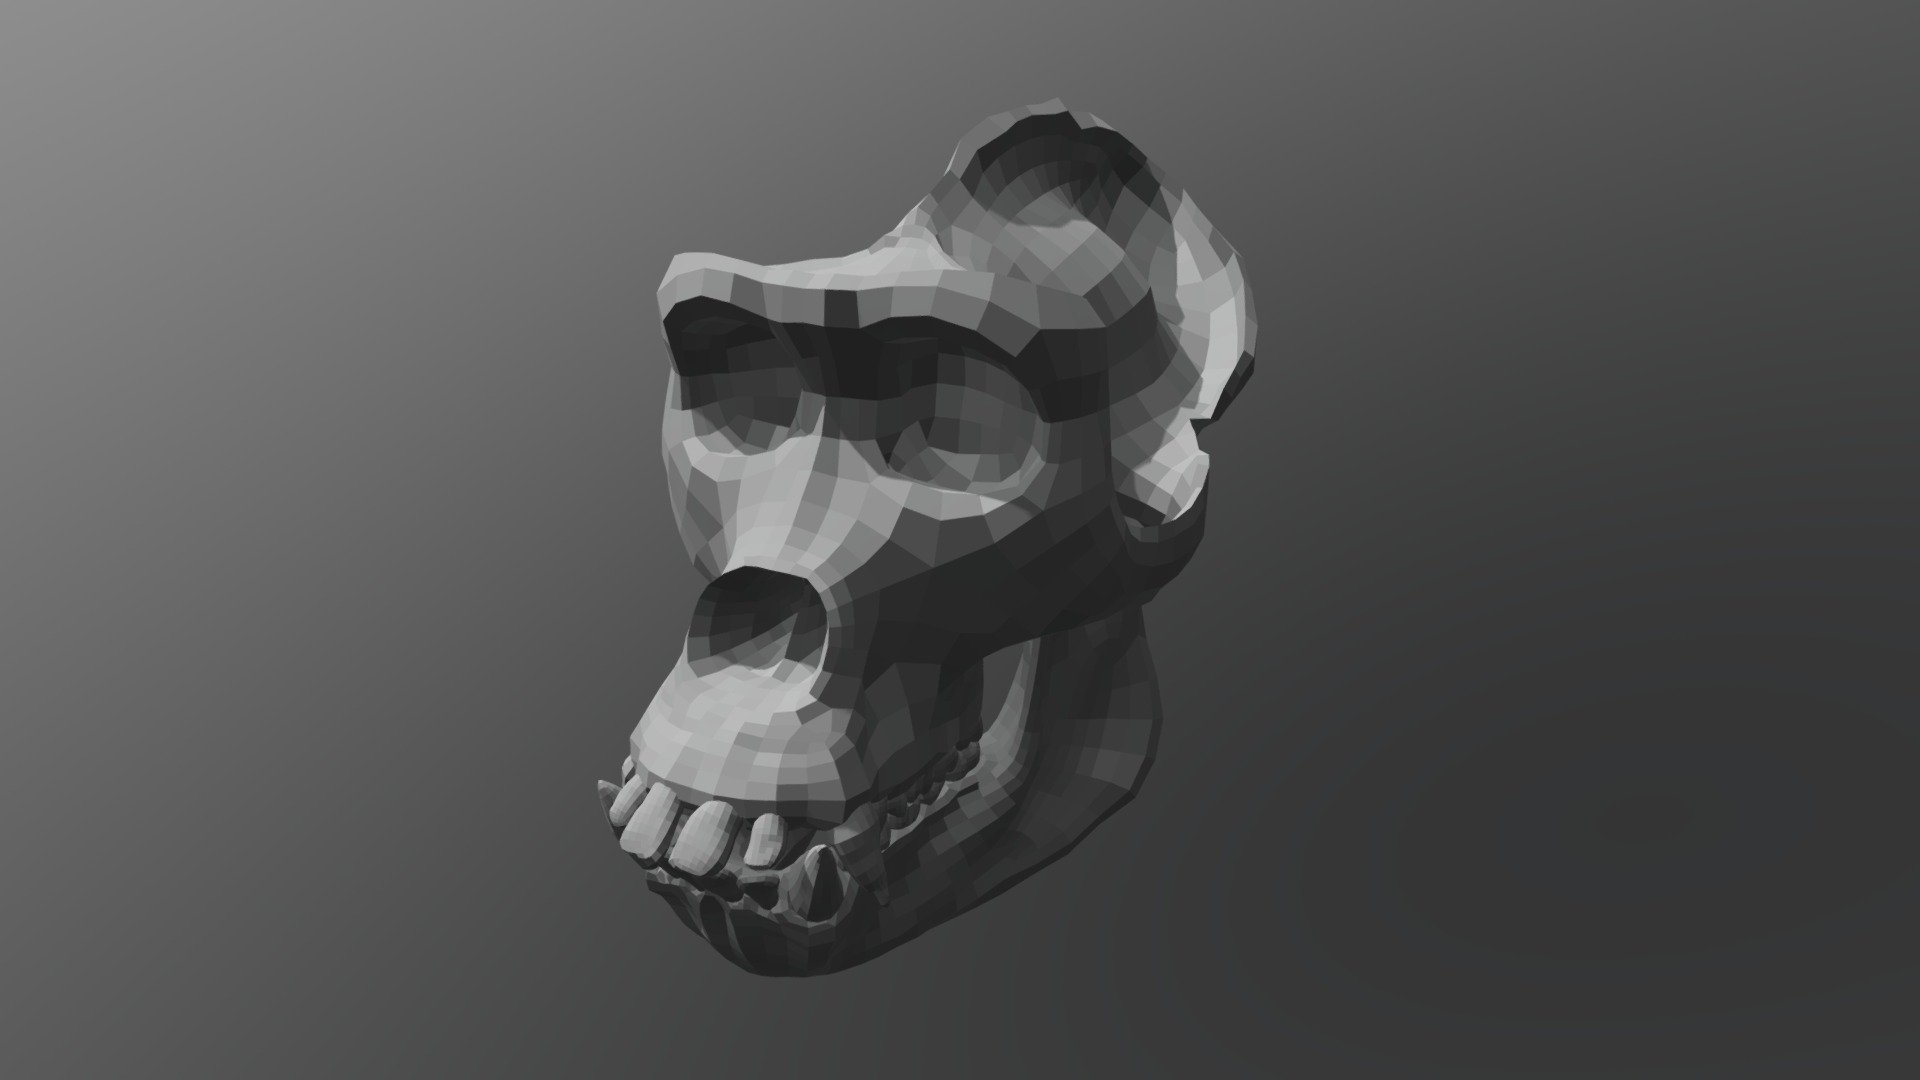 Gorilla Skull